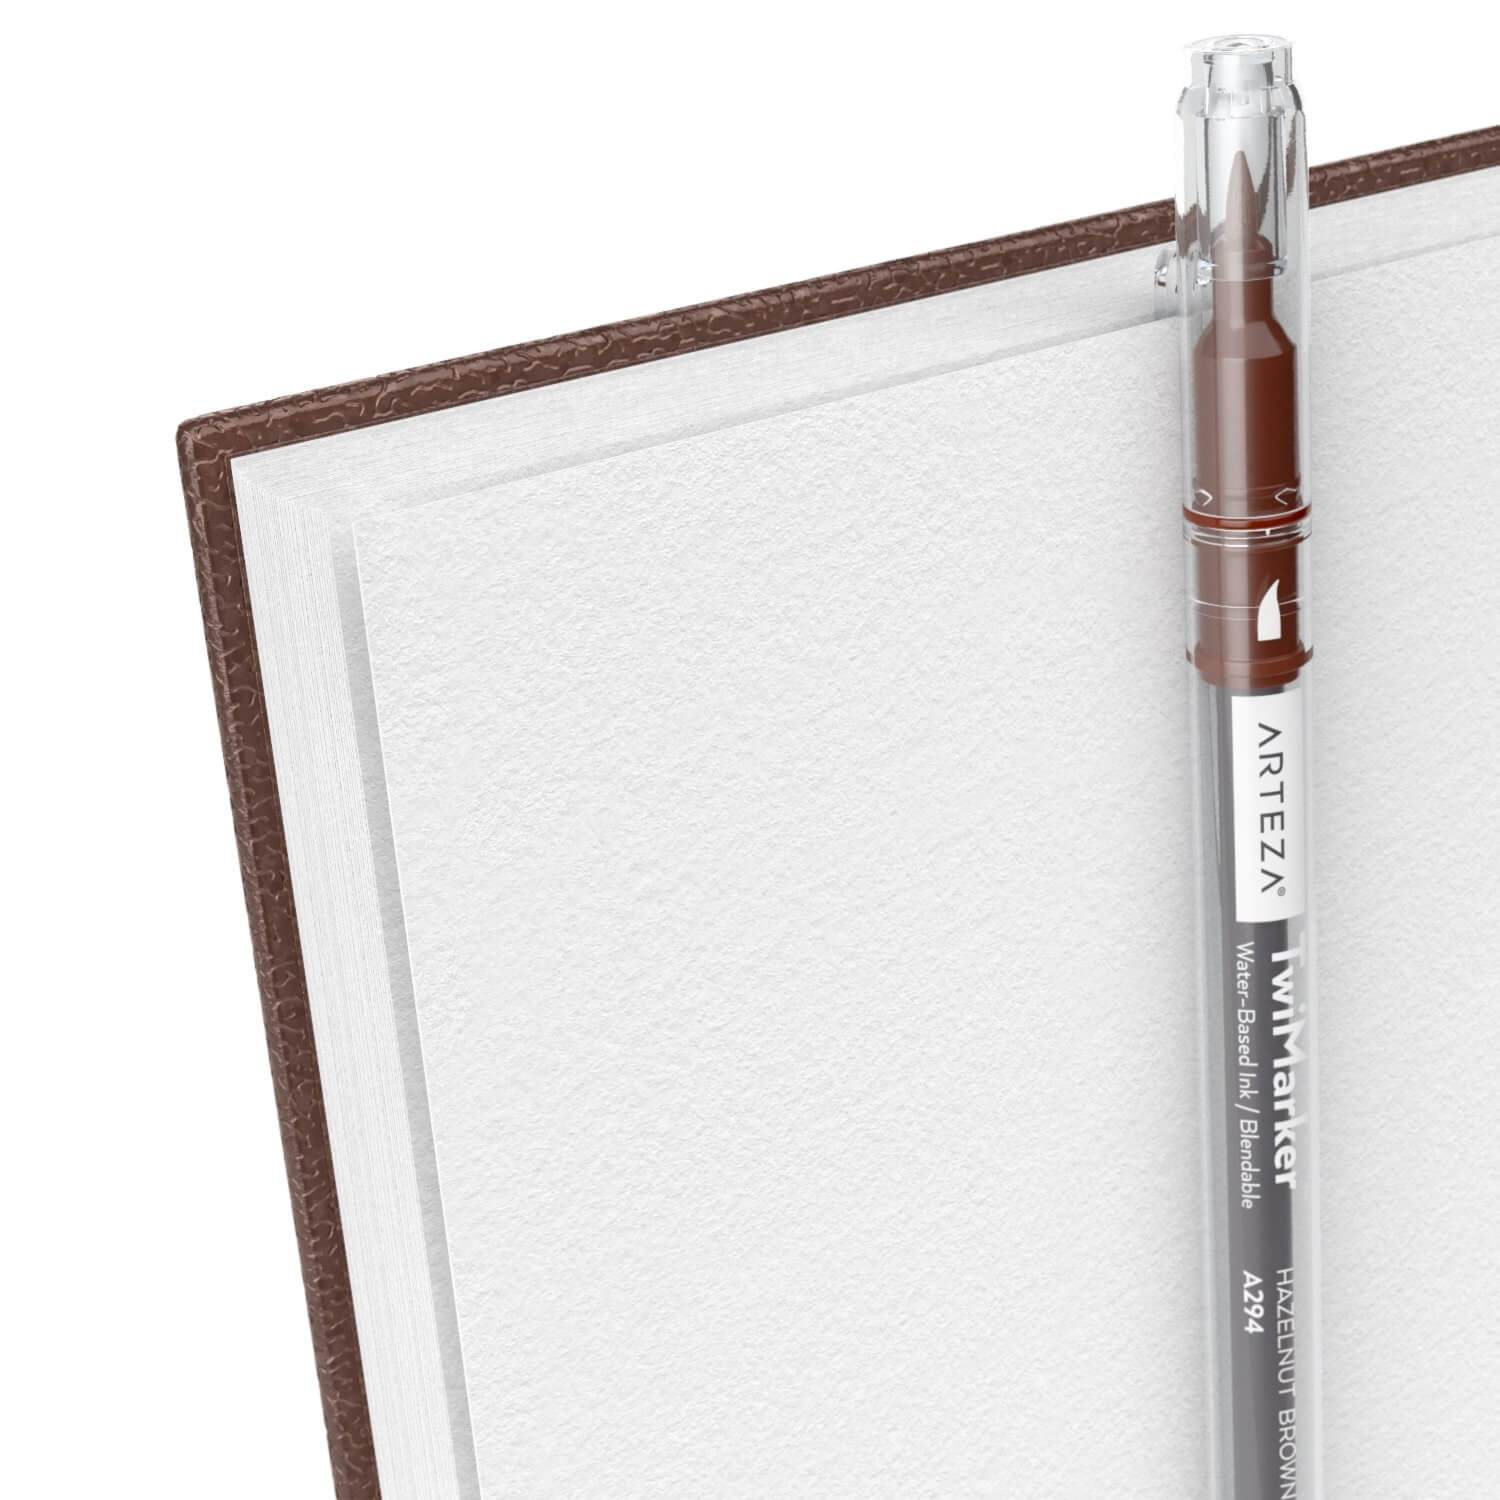 Leather-bound Camarilla Journal / Sketchbook Brown